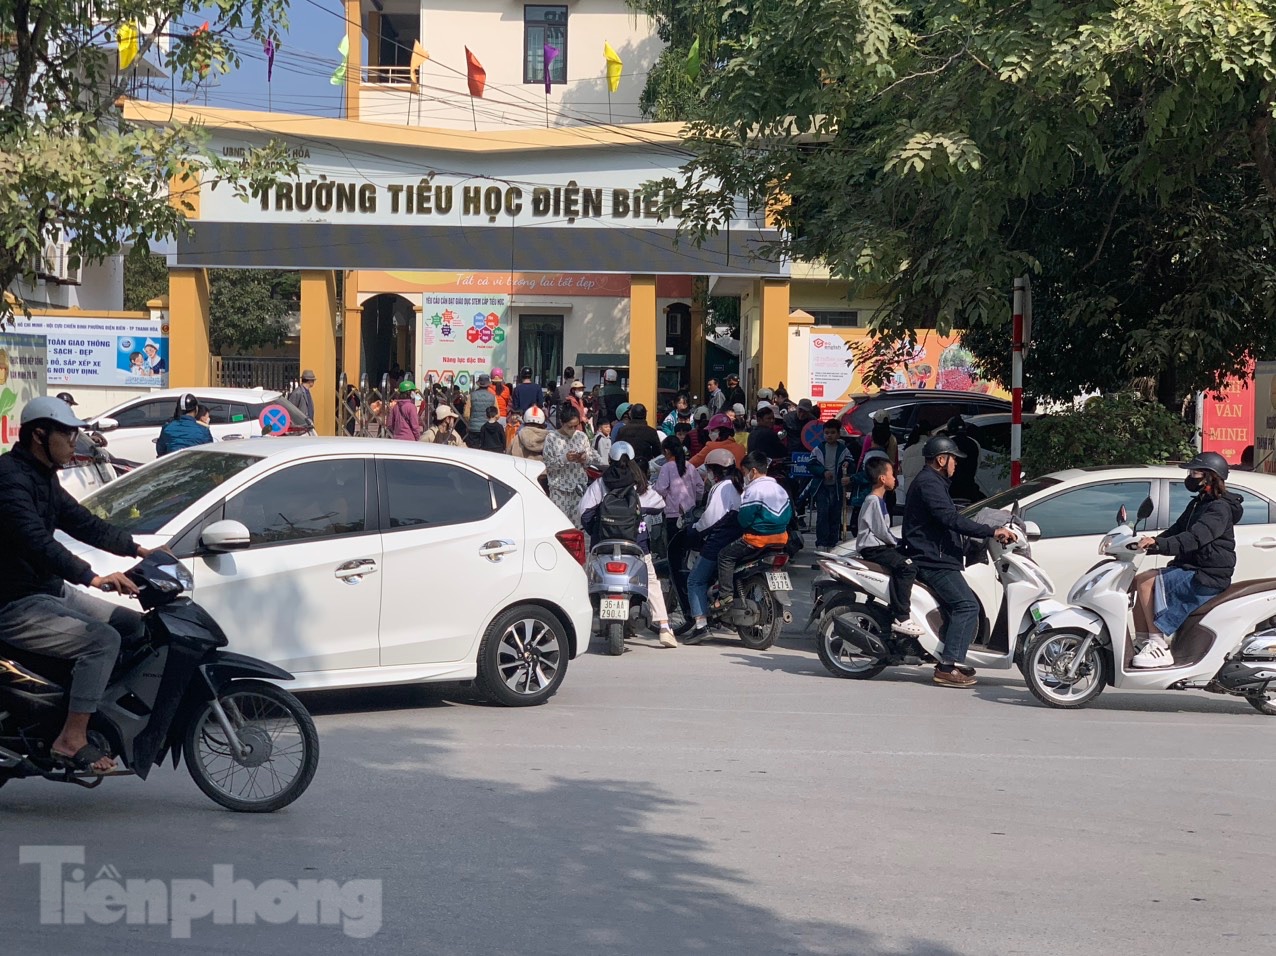 Mới nhất vụ học sinh phải nhập viện ở Thanh Hoá: Nhiều phụ huynh 'cắt' bán trú